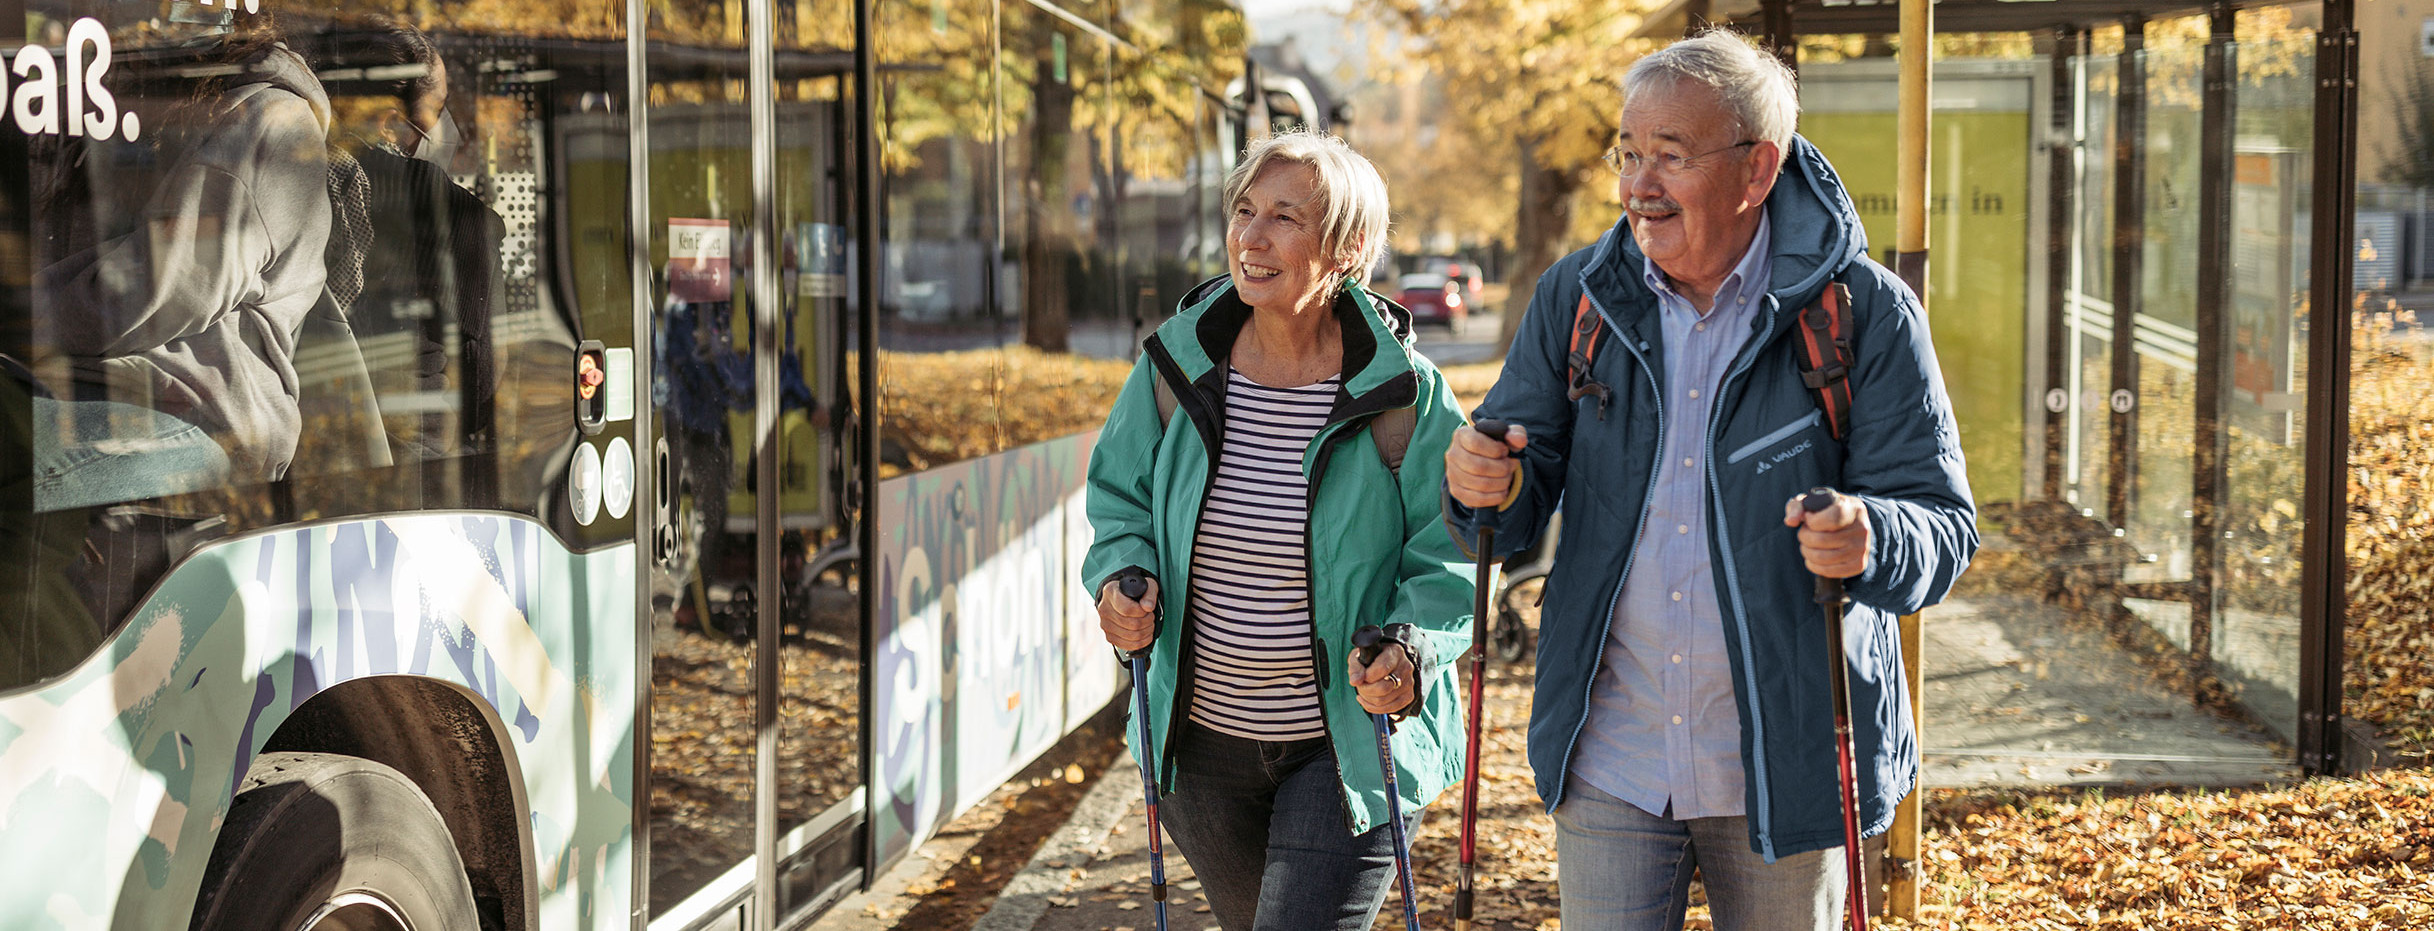 Zwei ältere Menschen in Wanderkleidung laufen an einer Bushaltestelle vorbei.